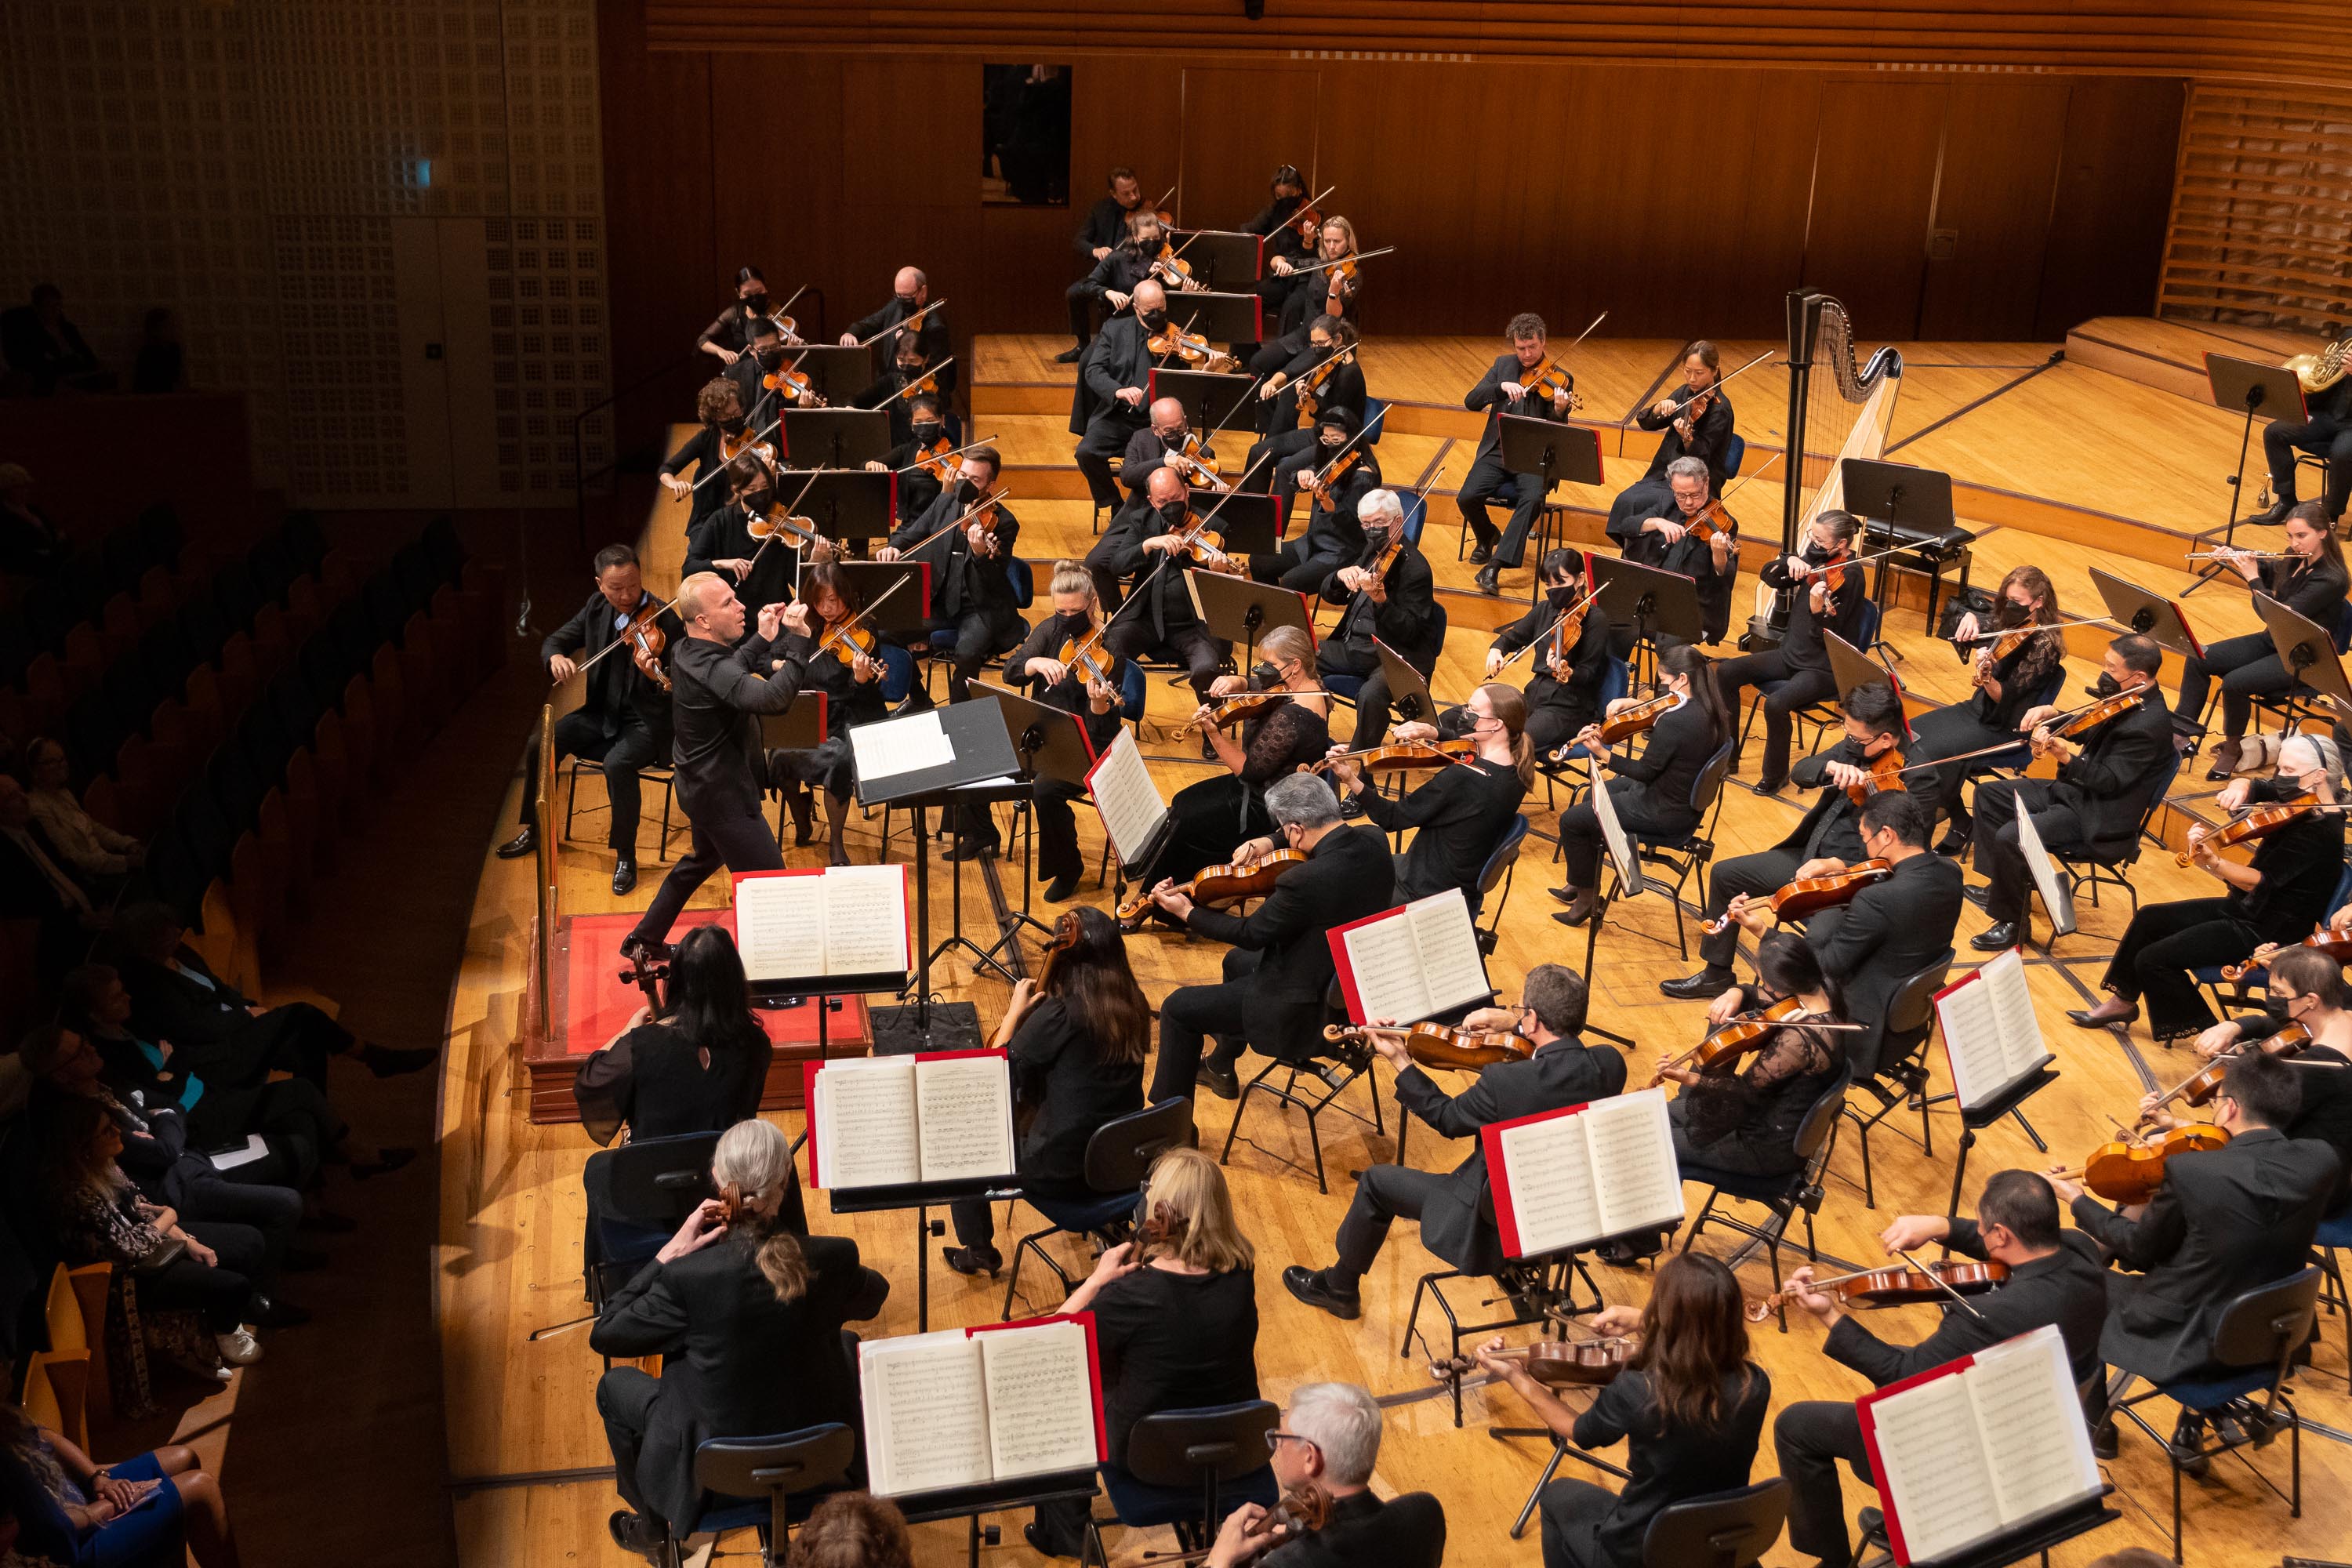 The Symphony partly reflects the political struggles of Dvořák’s Czech countrymen